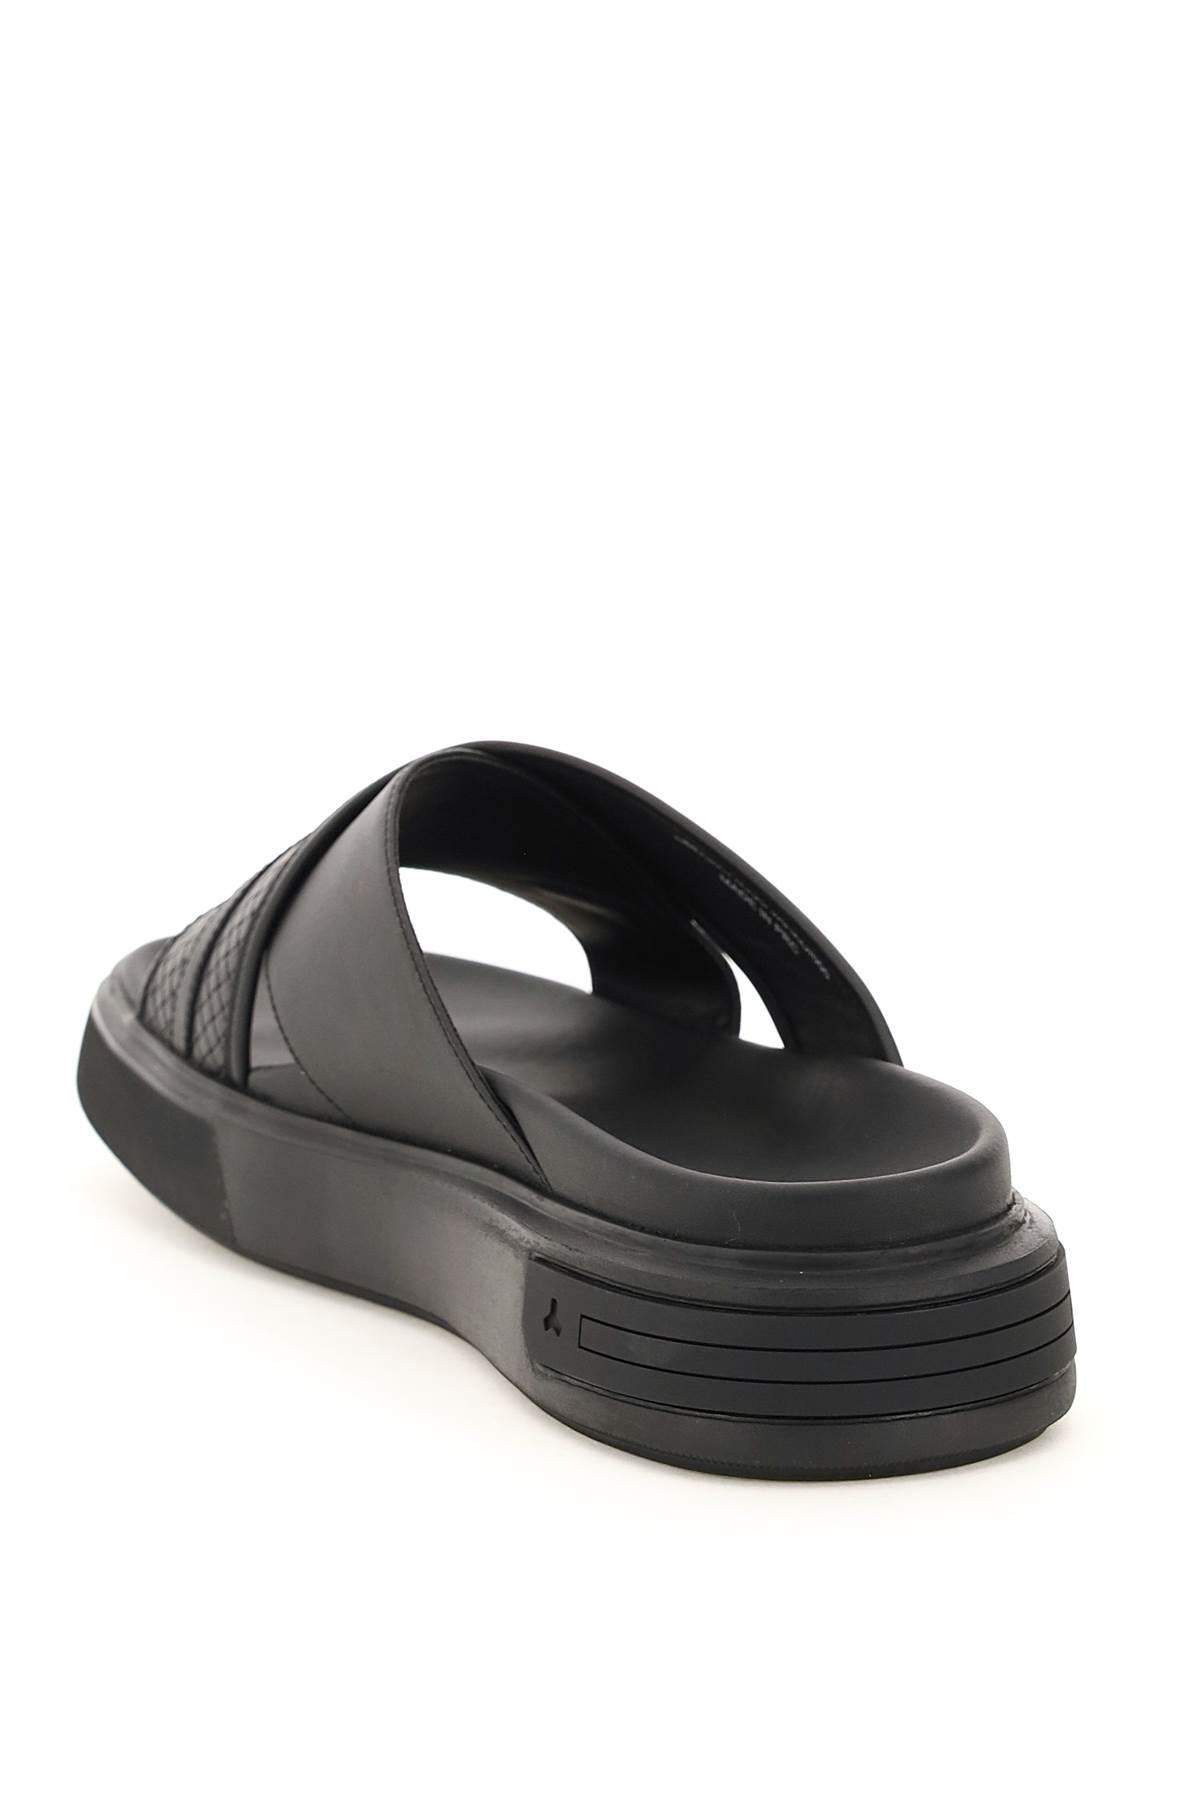 Bally Jarko Leather Sandals in Black (Black) (Black) for Men 